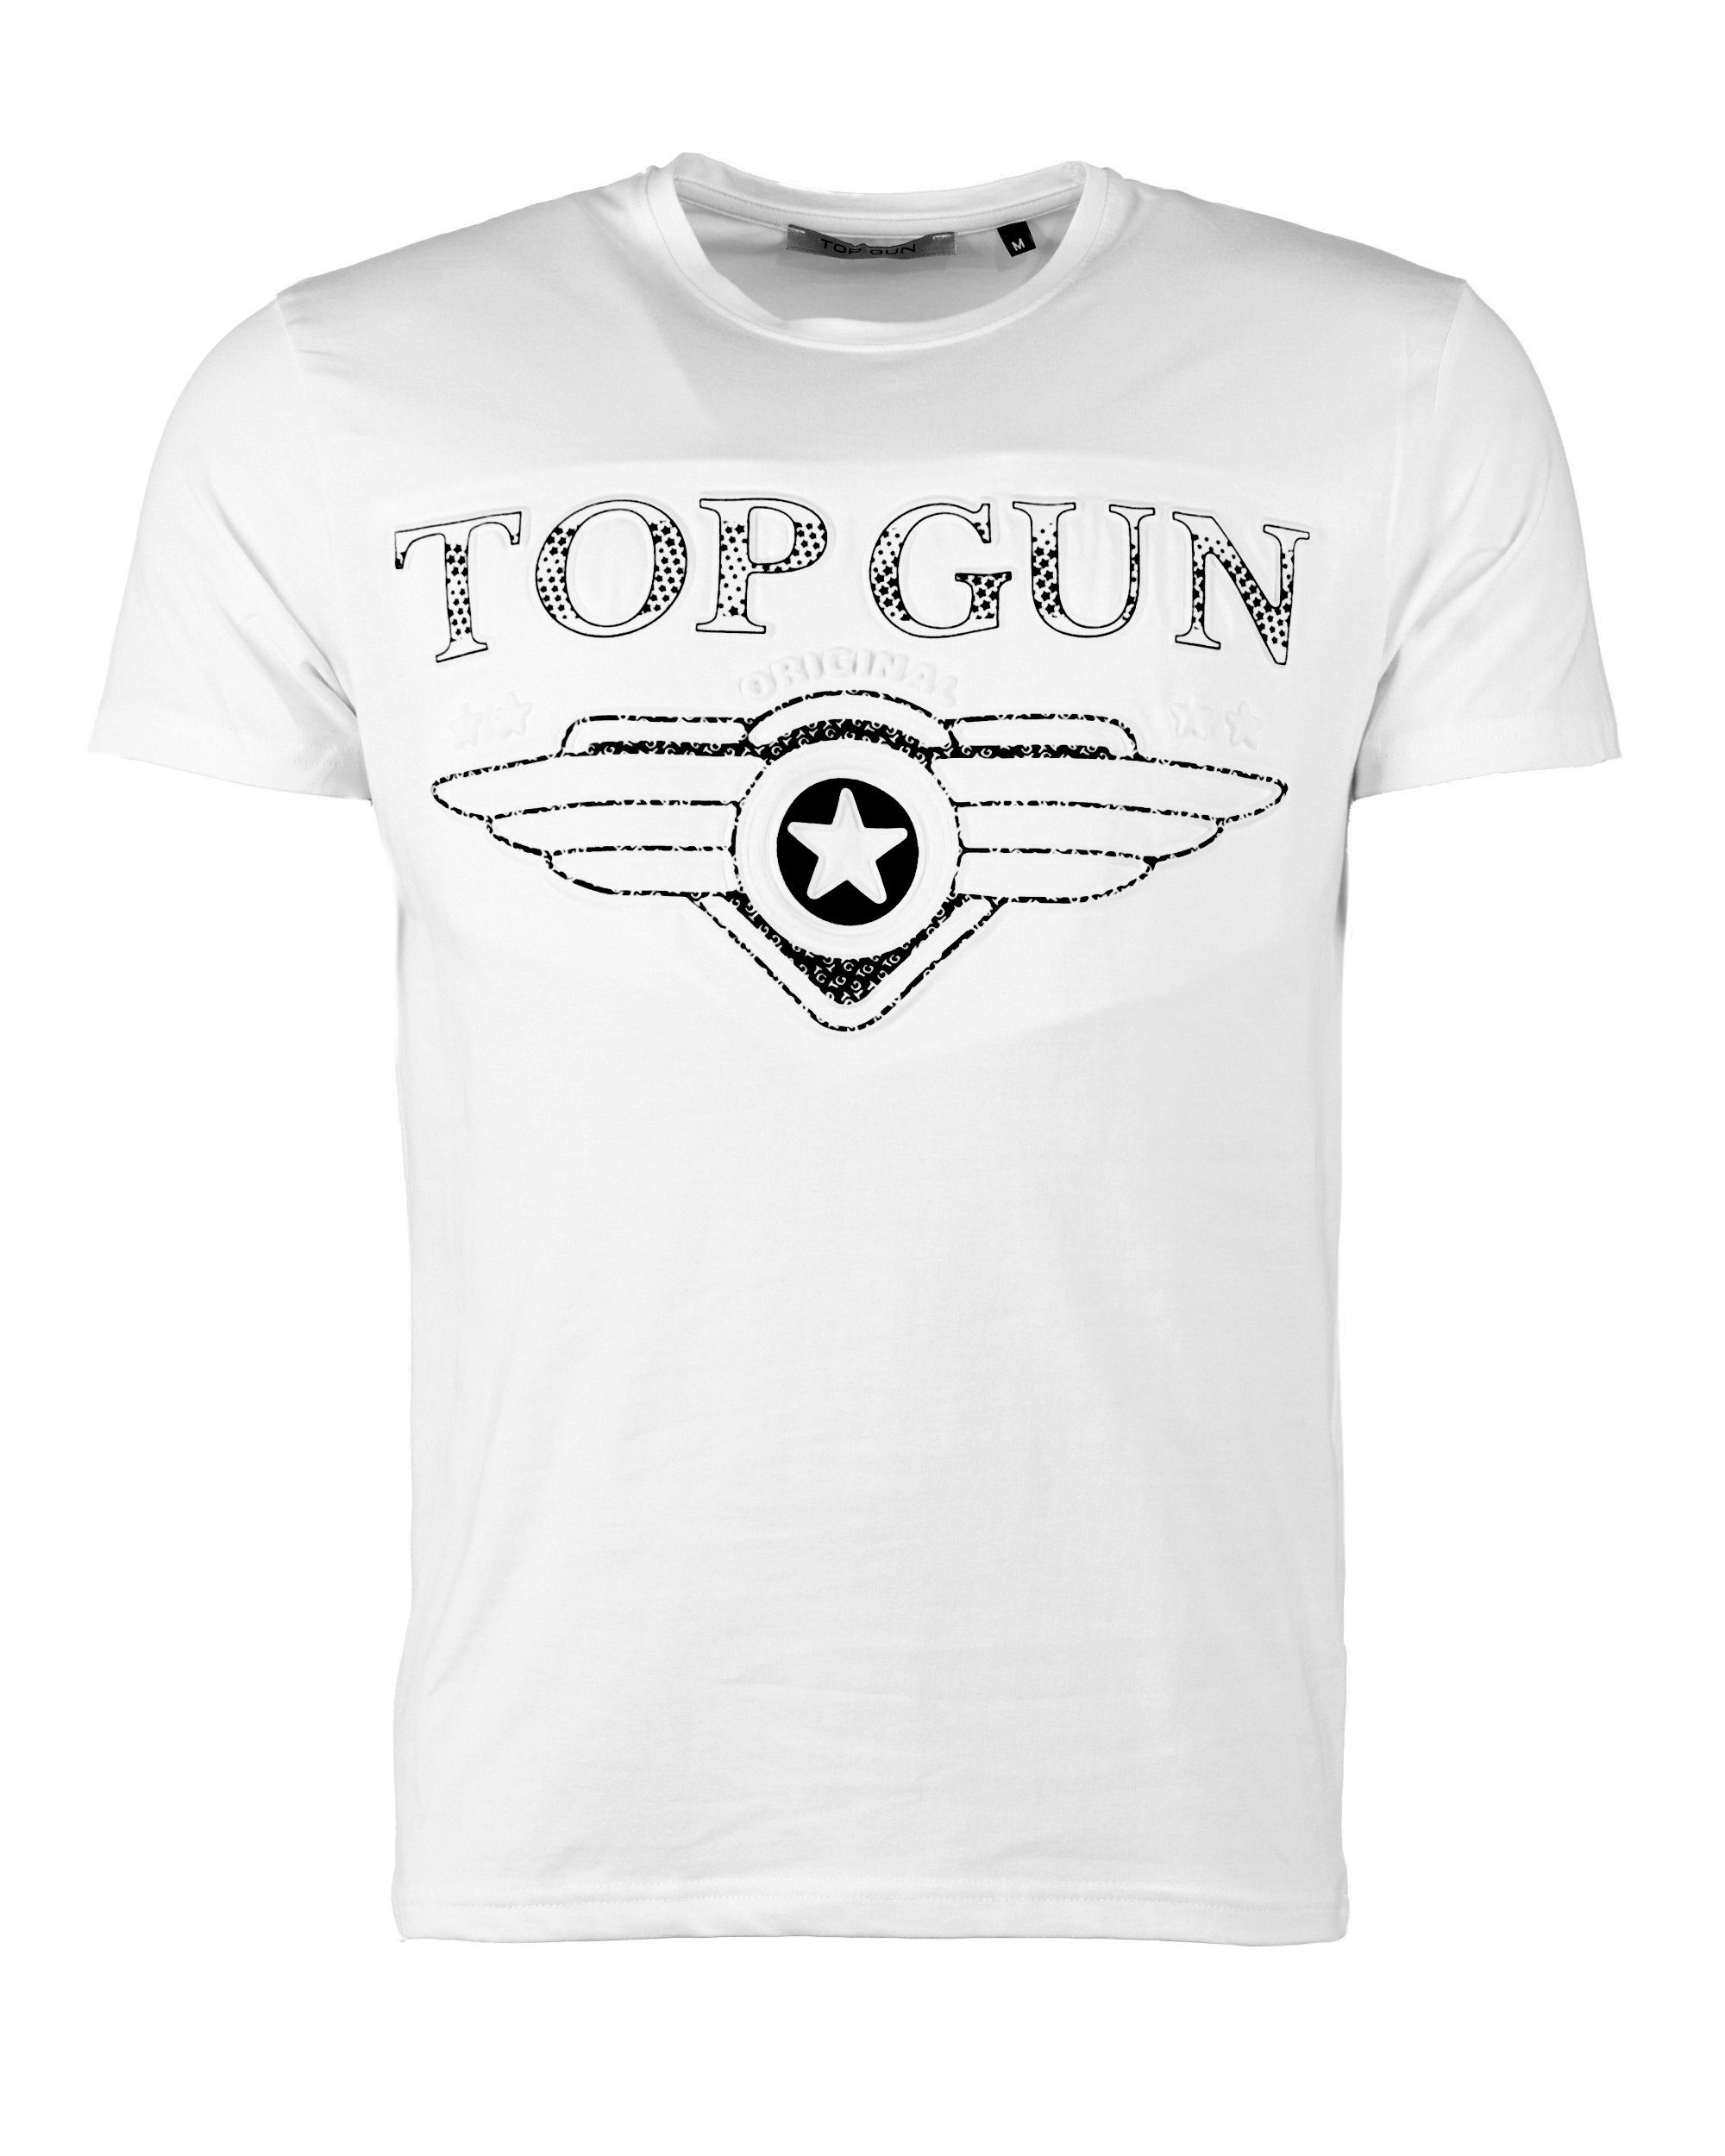 GUN Bling4U T-Shirt white TOP TG20193017